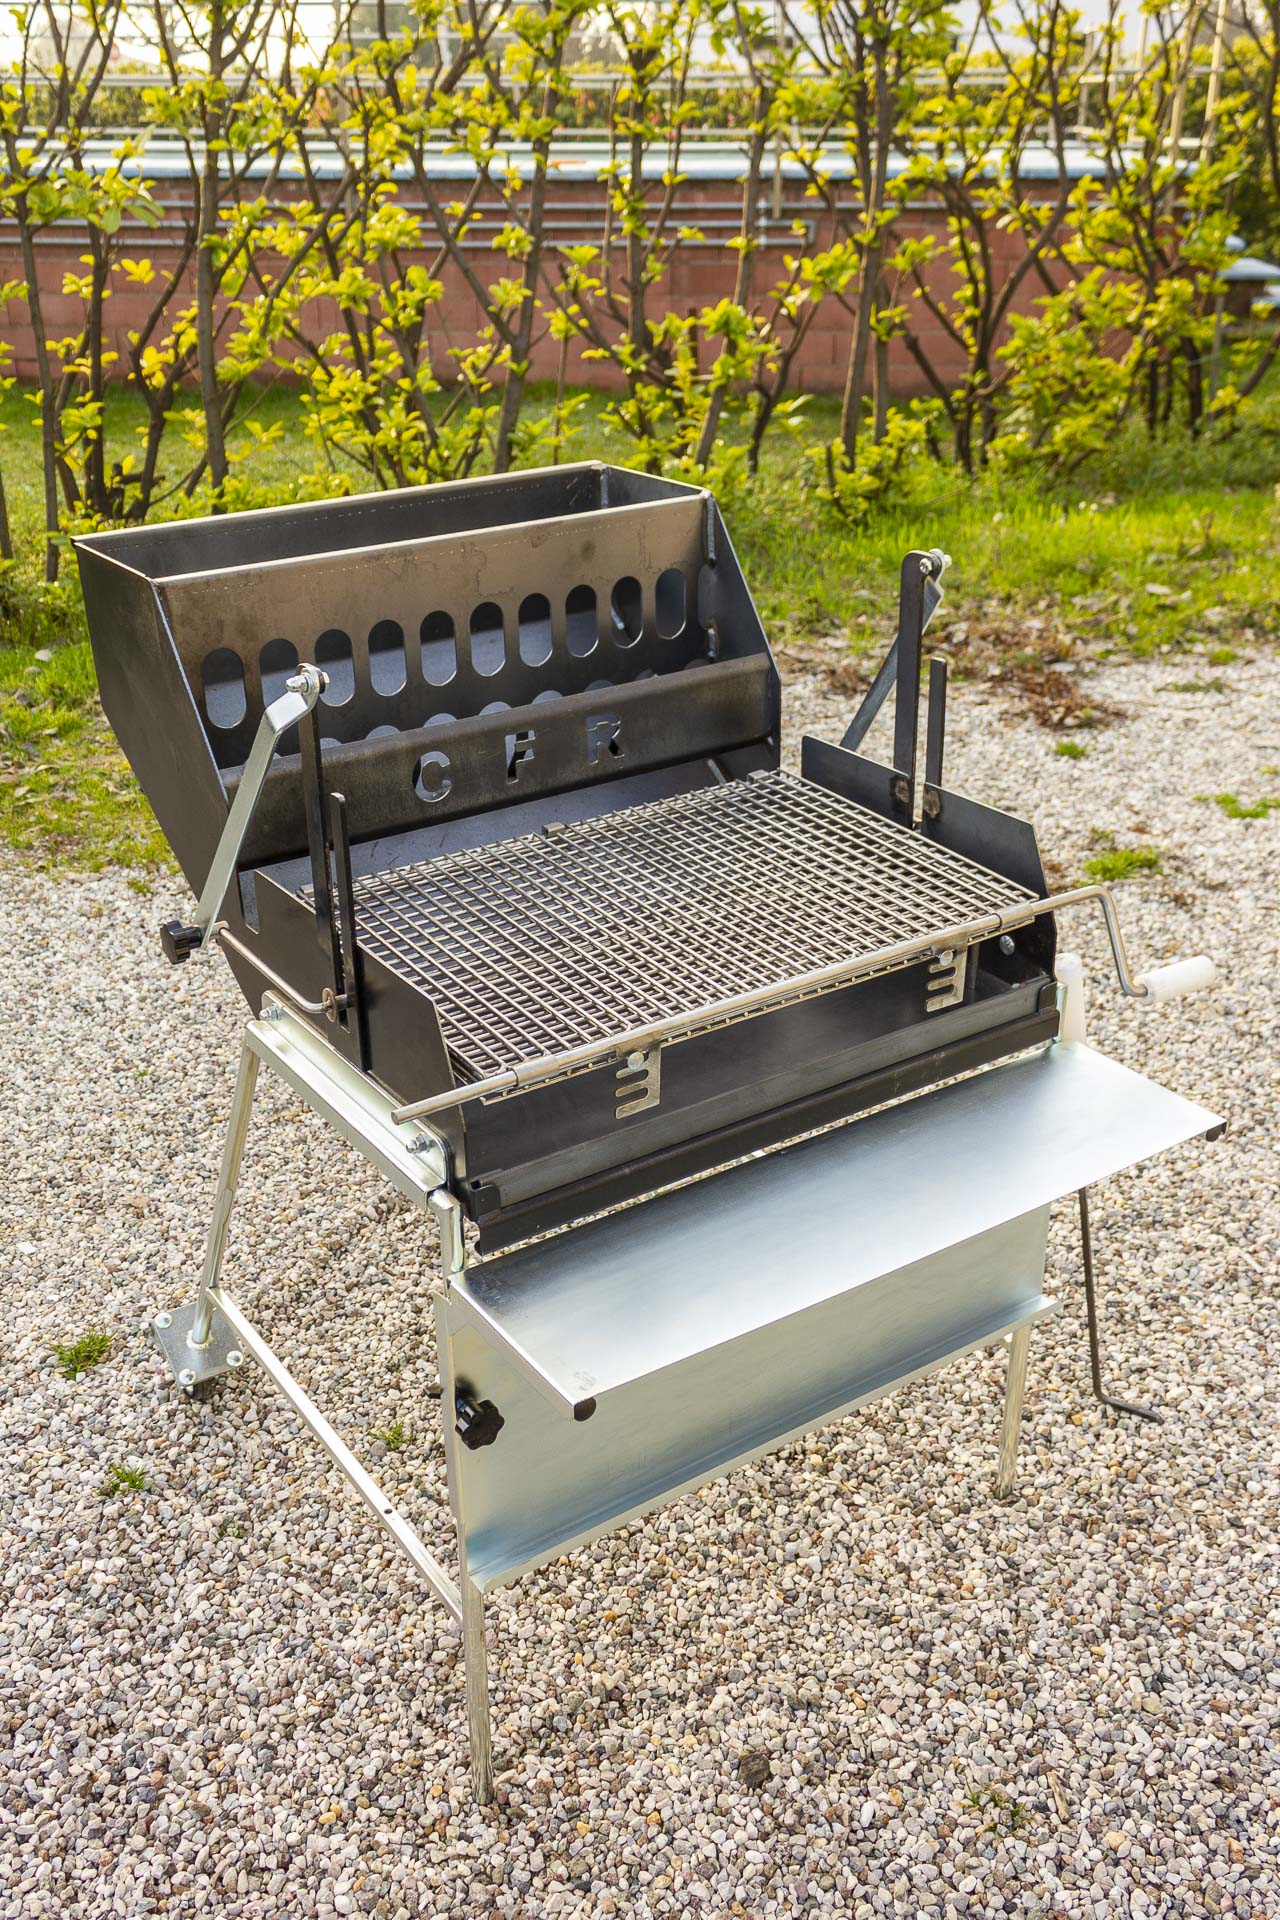 Barbecue CFR60 – Barbecue CFR